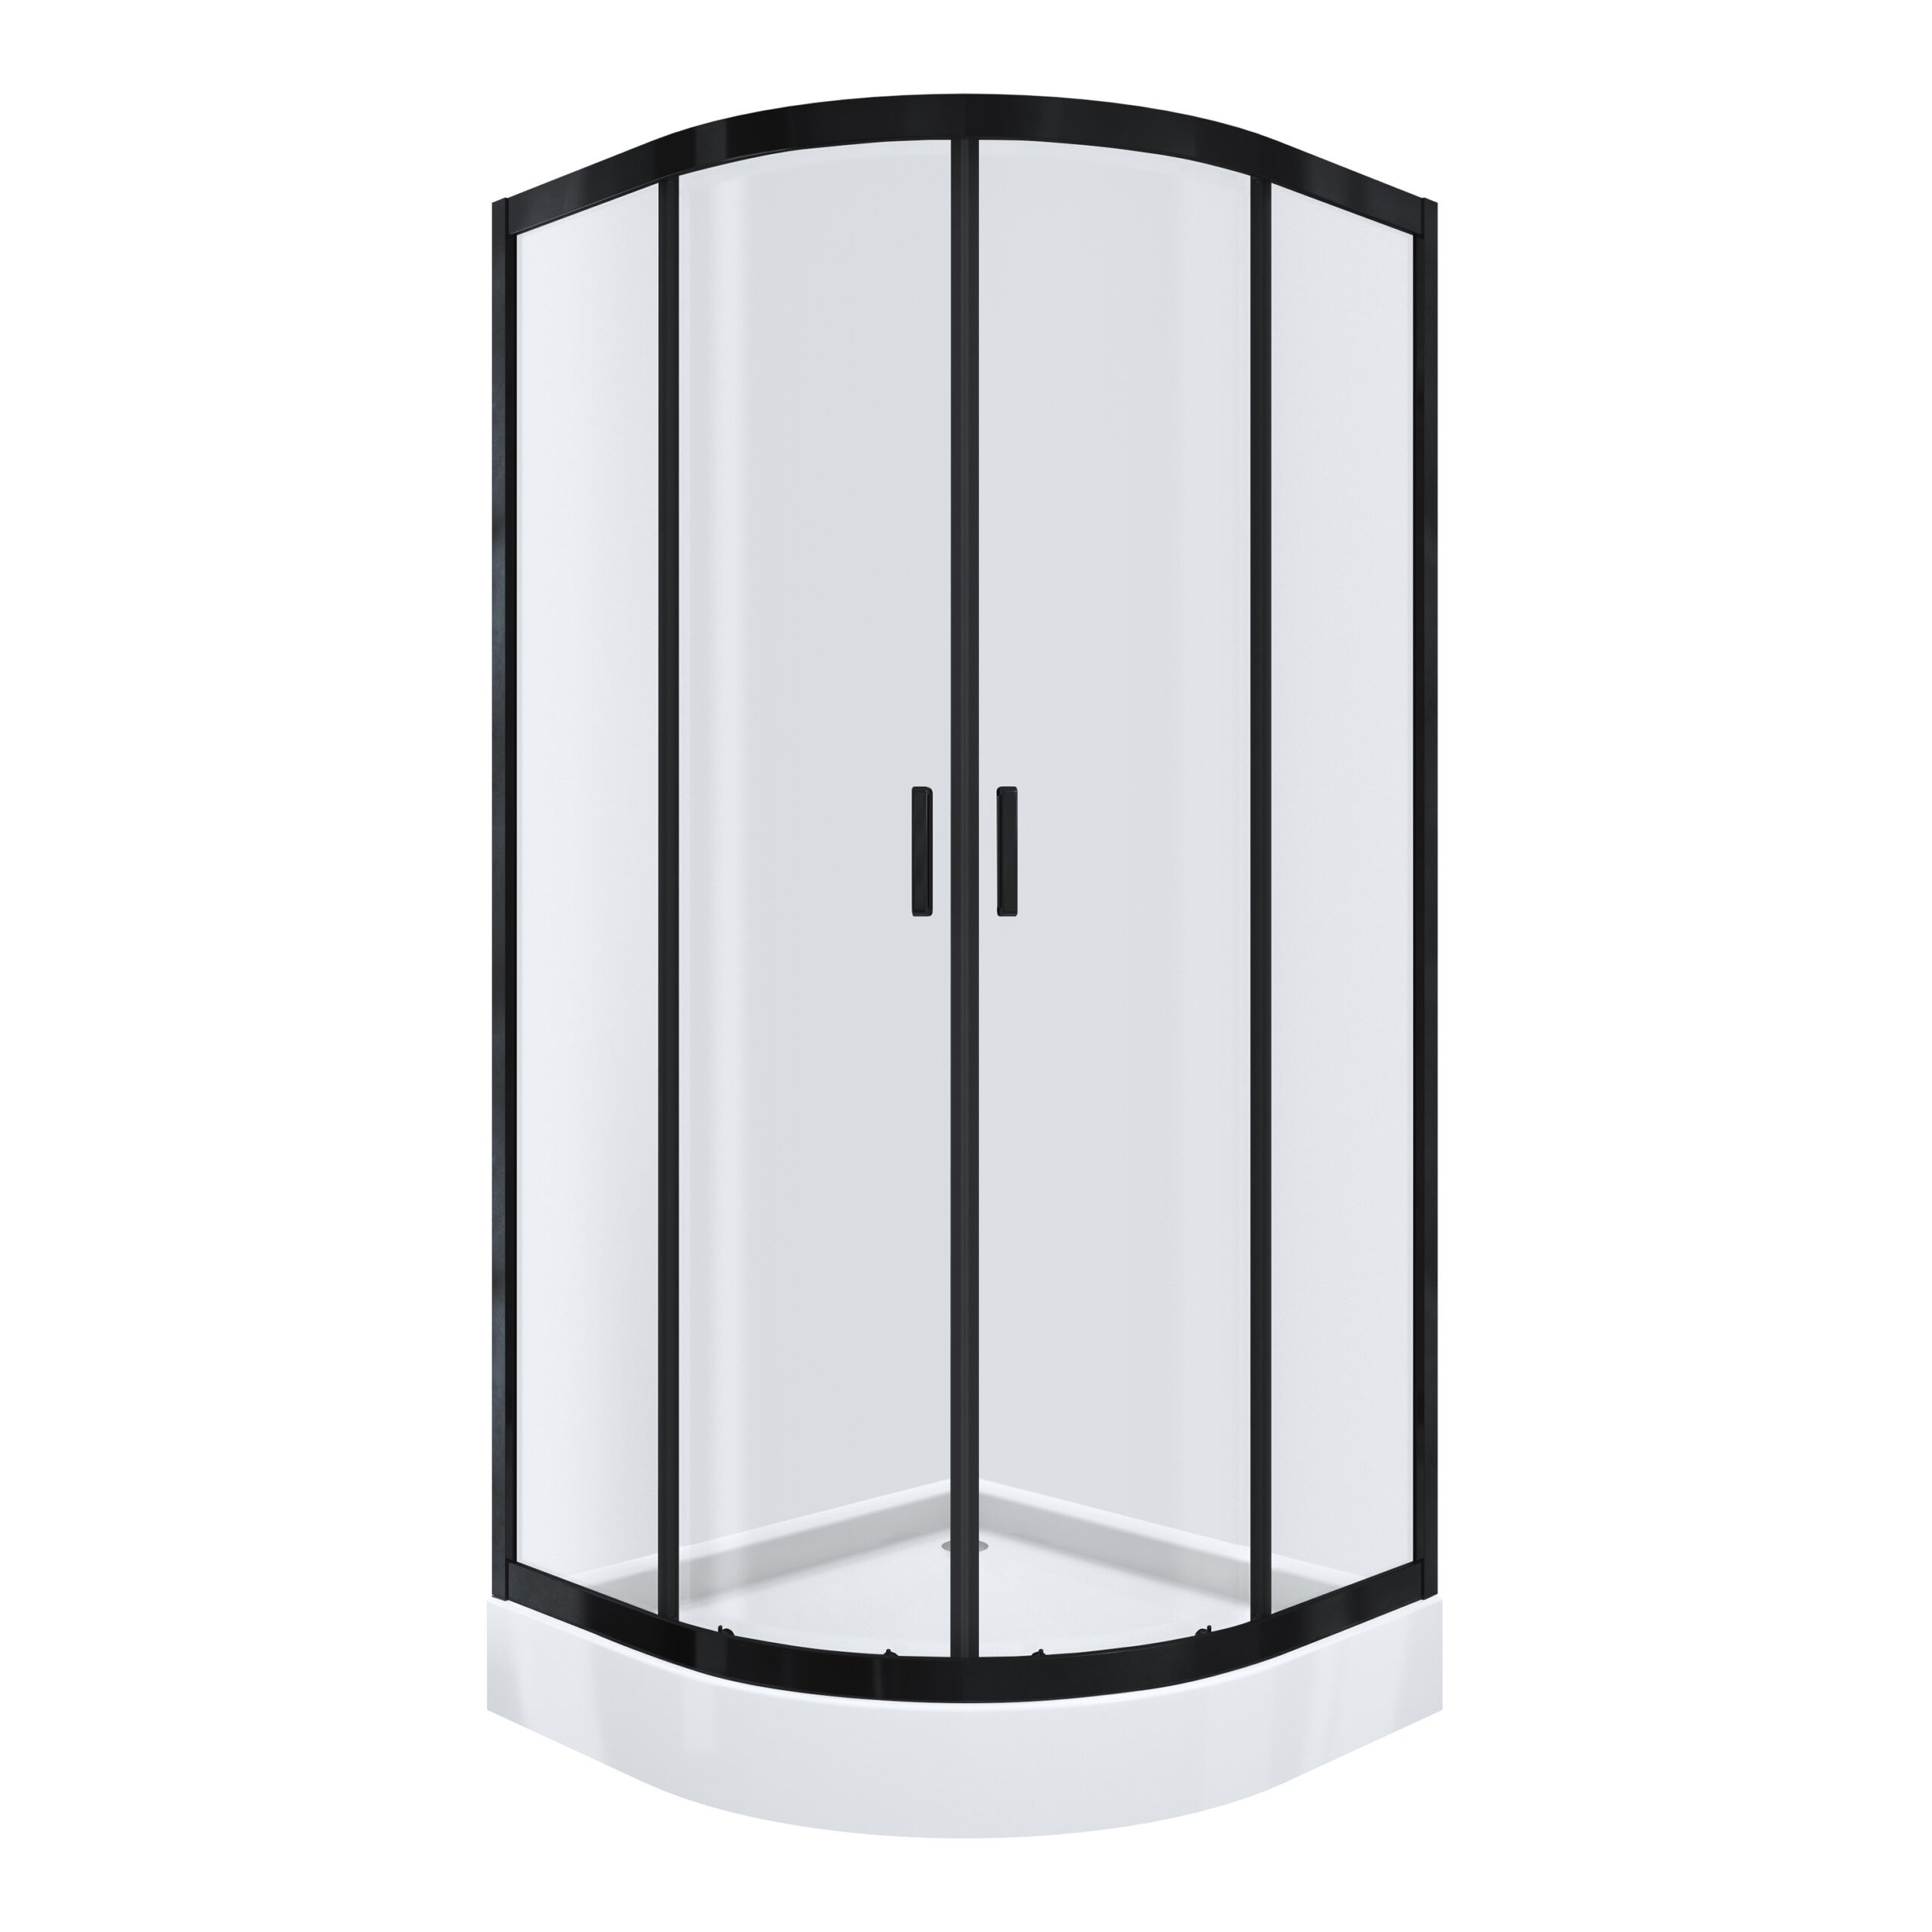 Kabina prysznicowa Kabi Ideal drzwi rozsuwane 90 x 90 cm